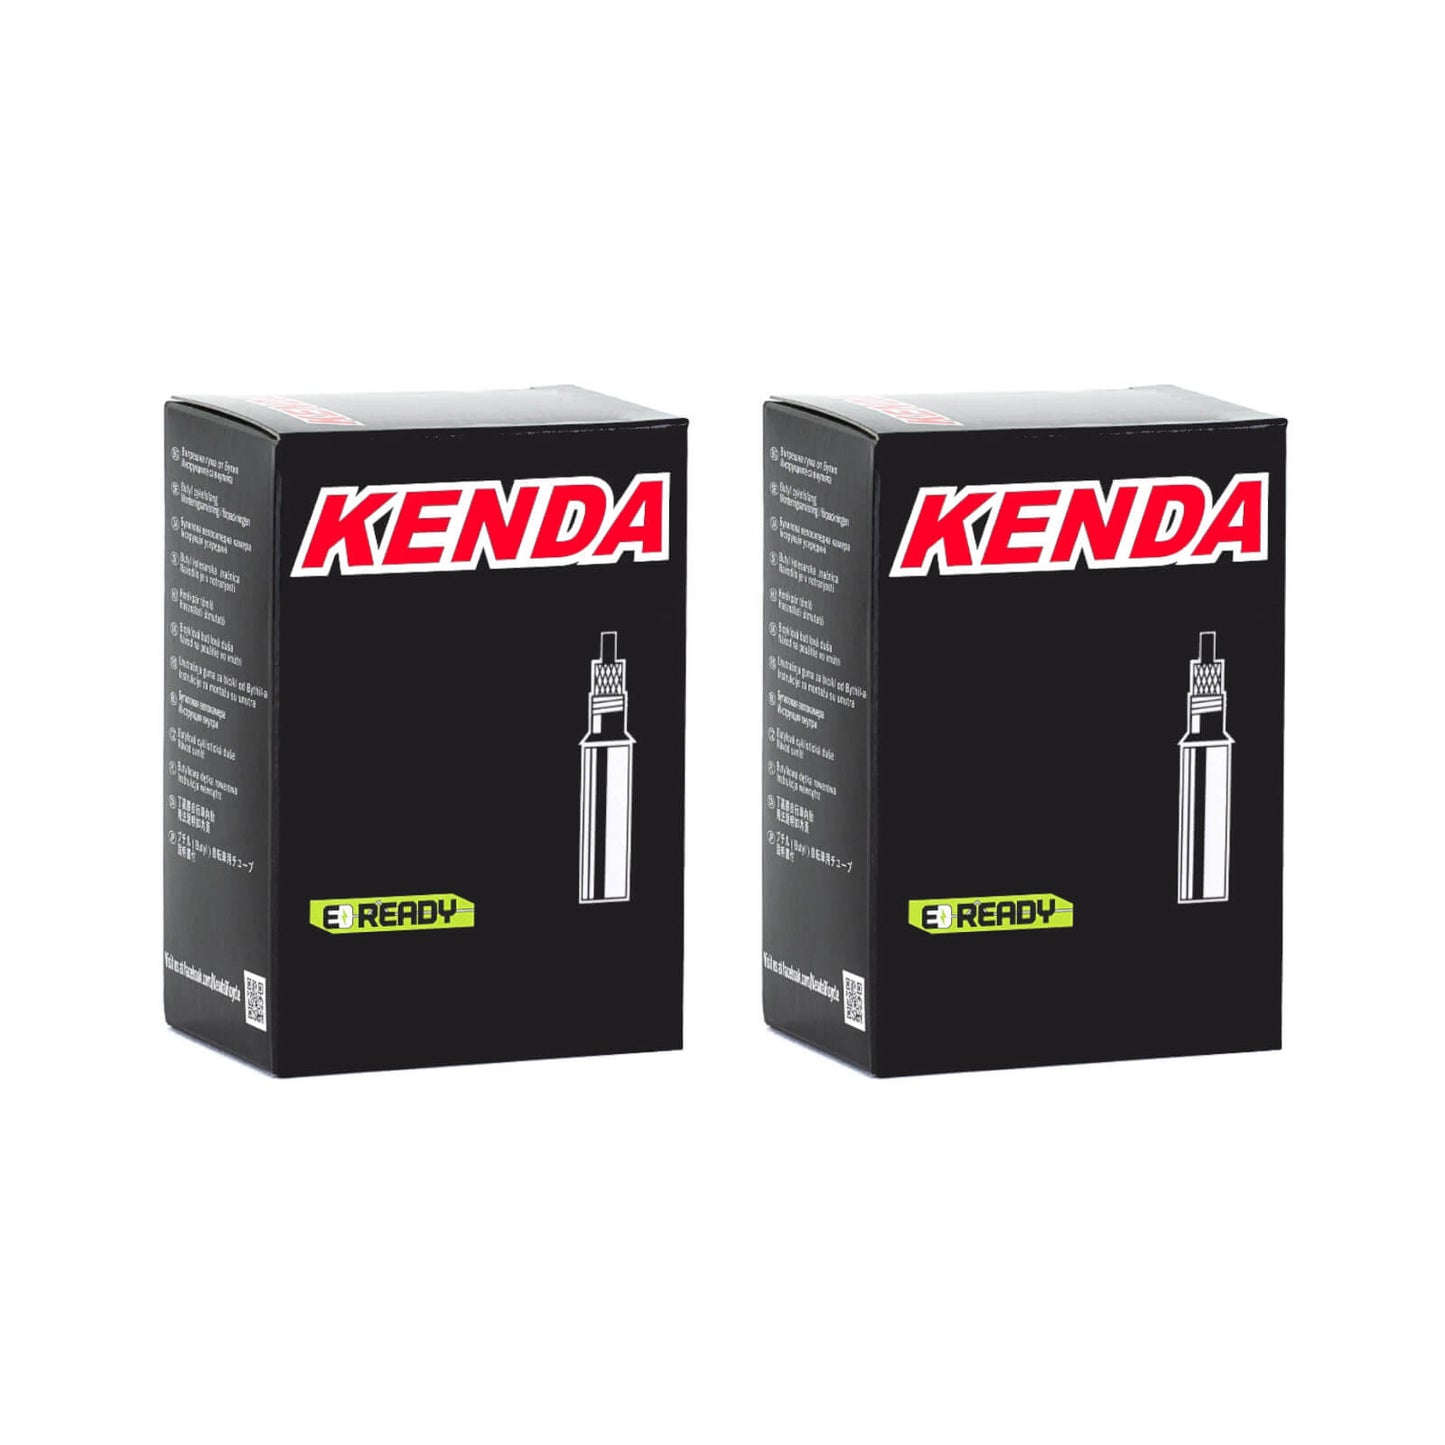 Kenda 700x30-43c 700c Presta Valve Bike Inner Tube Pack of 2